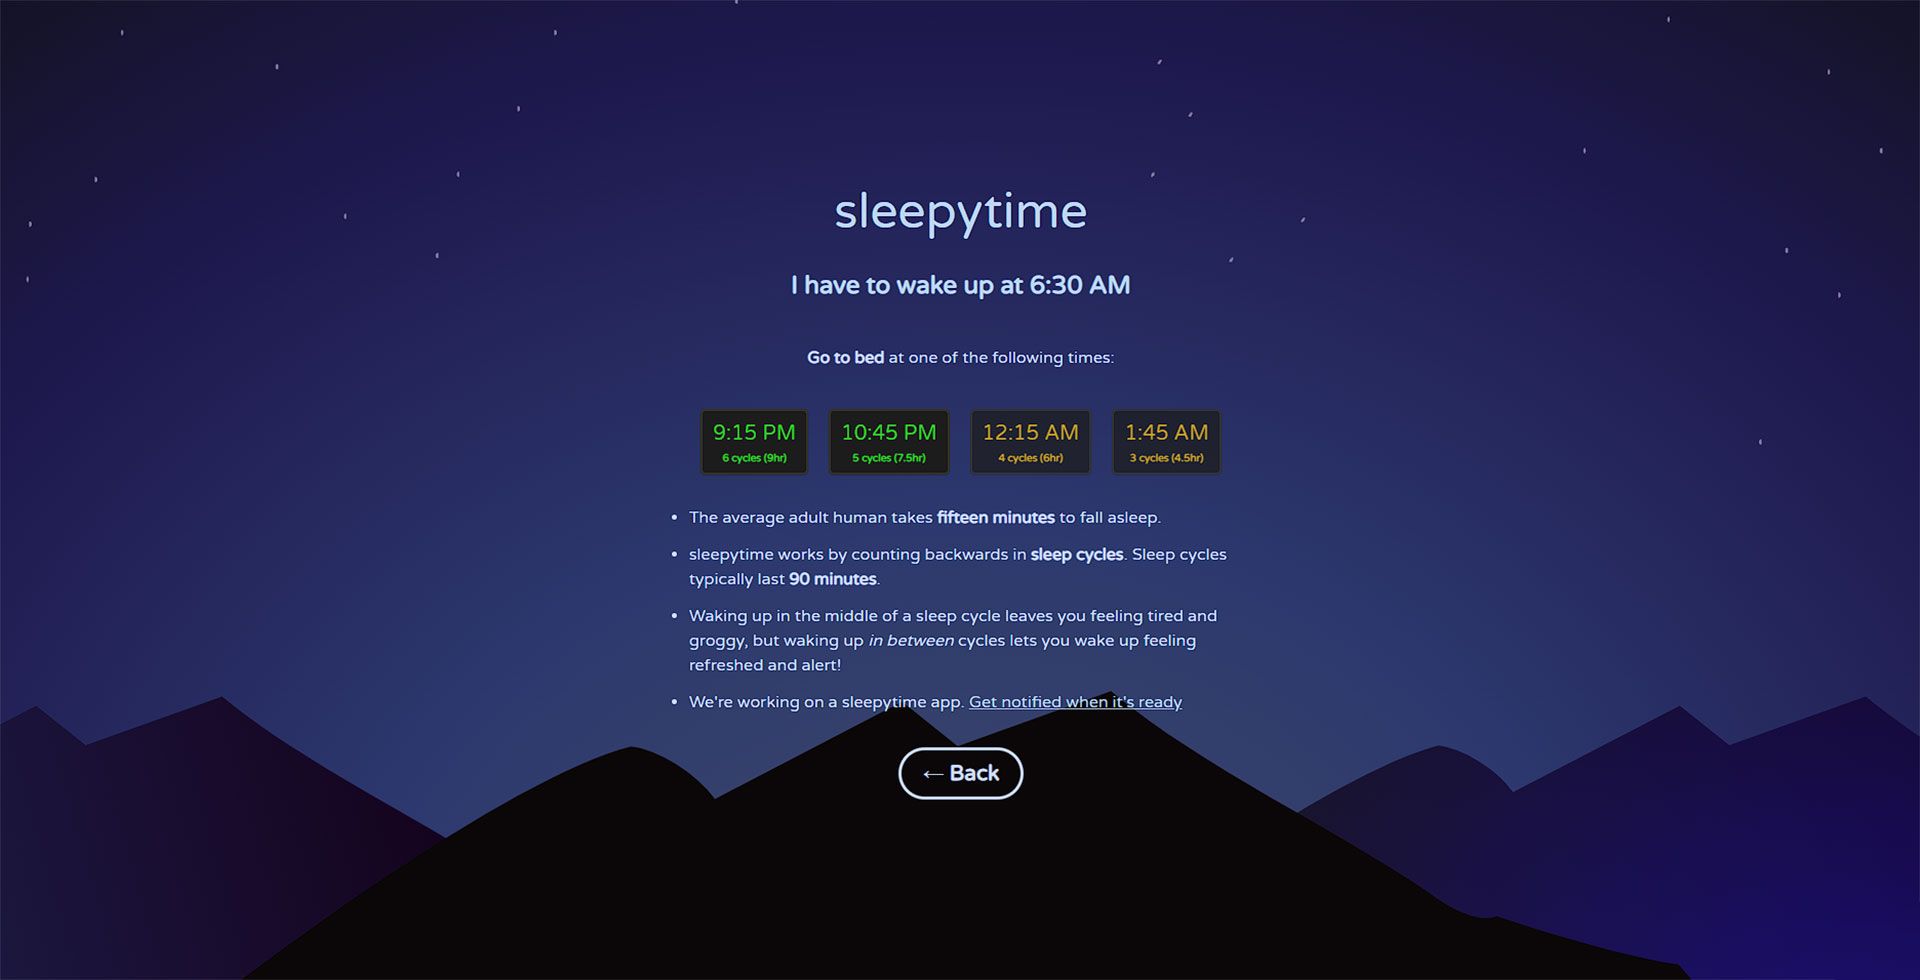 ارائه اطلاعات زمان مناسب برای خواب در سایت Sleepytime